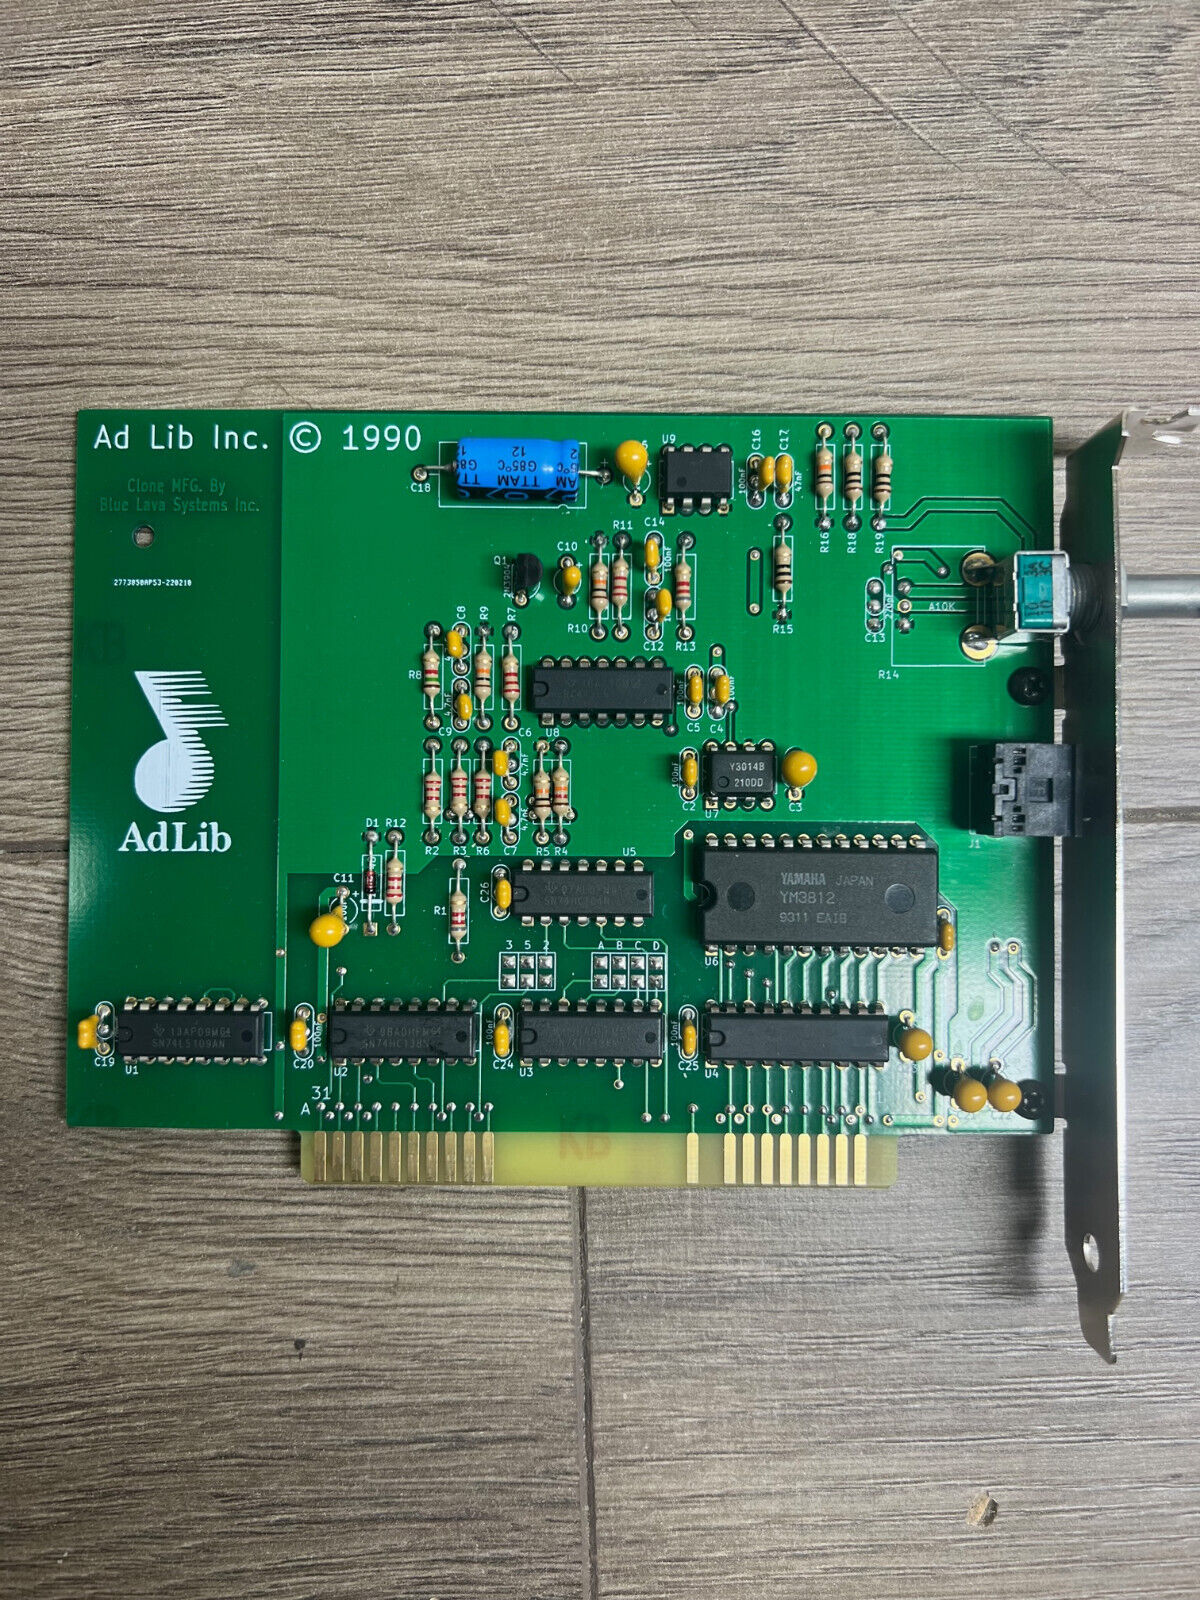 AdLib OPL2 Sound Card 8-Bit ISA – AdLib Clone